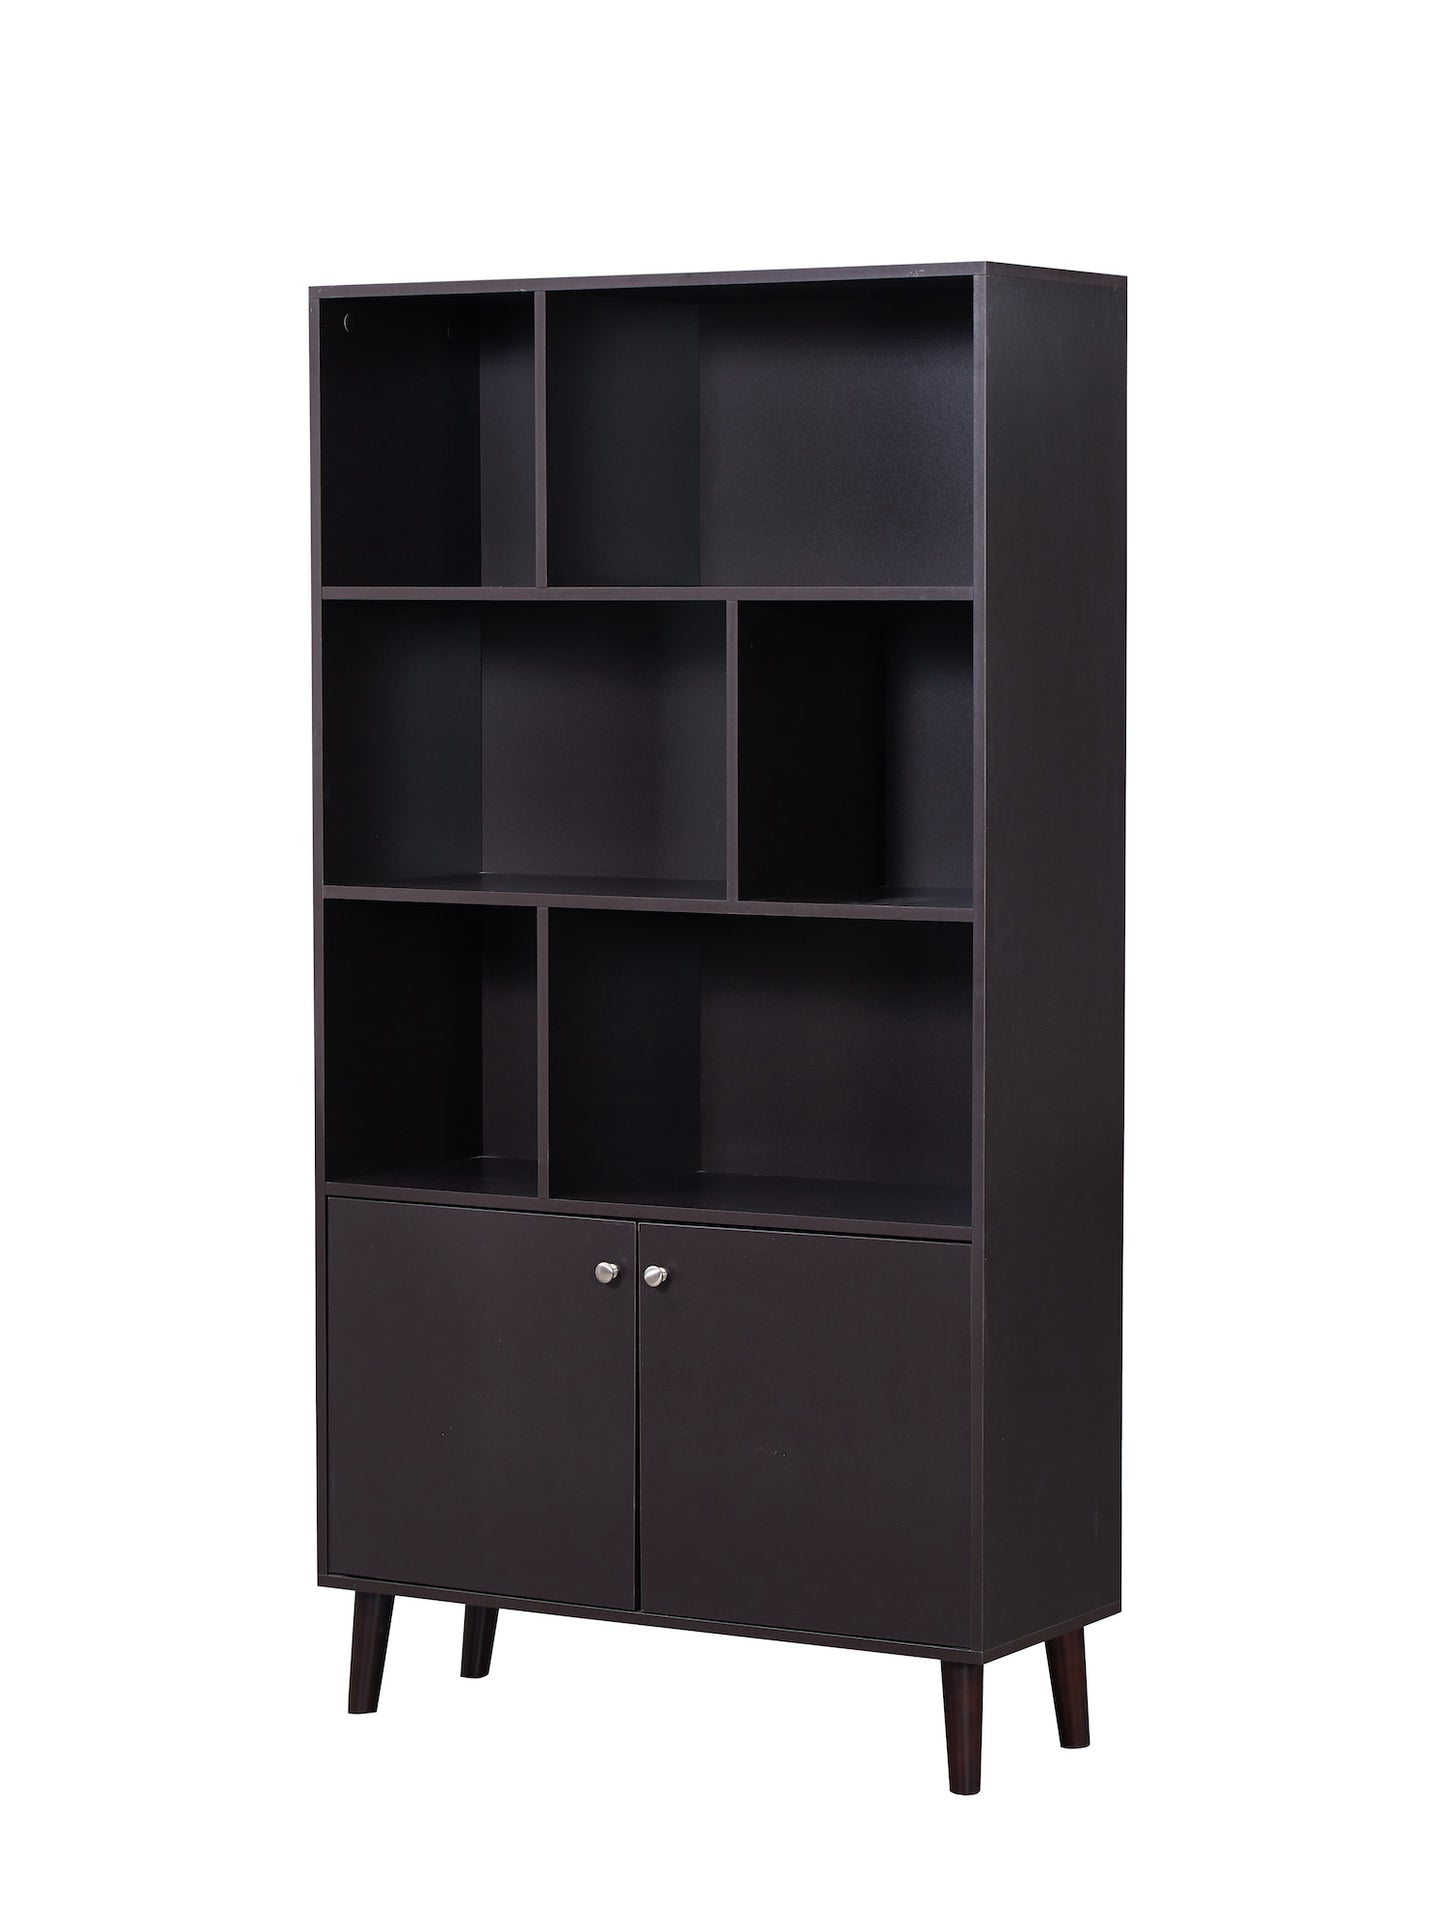 JaydenMax 67" 3-Tier Bookshelf with Doors - Coffee